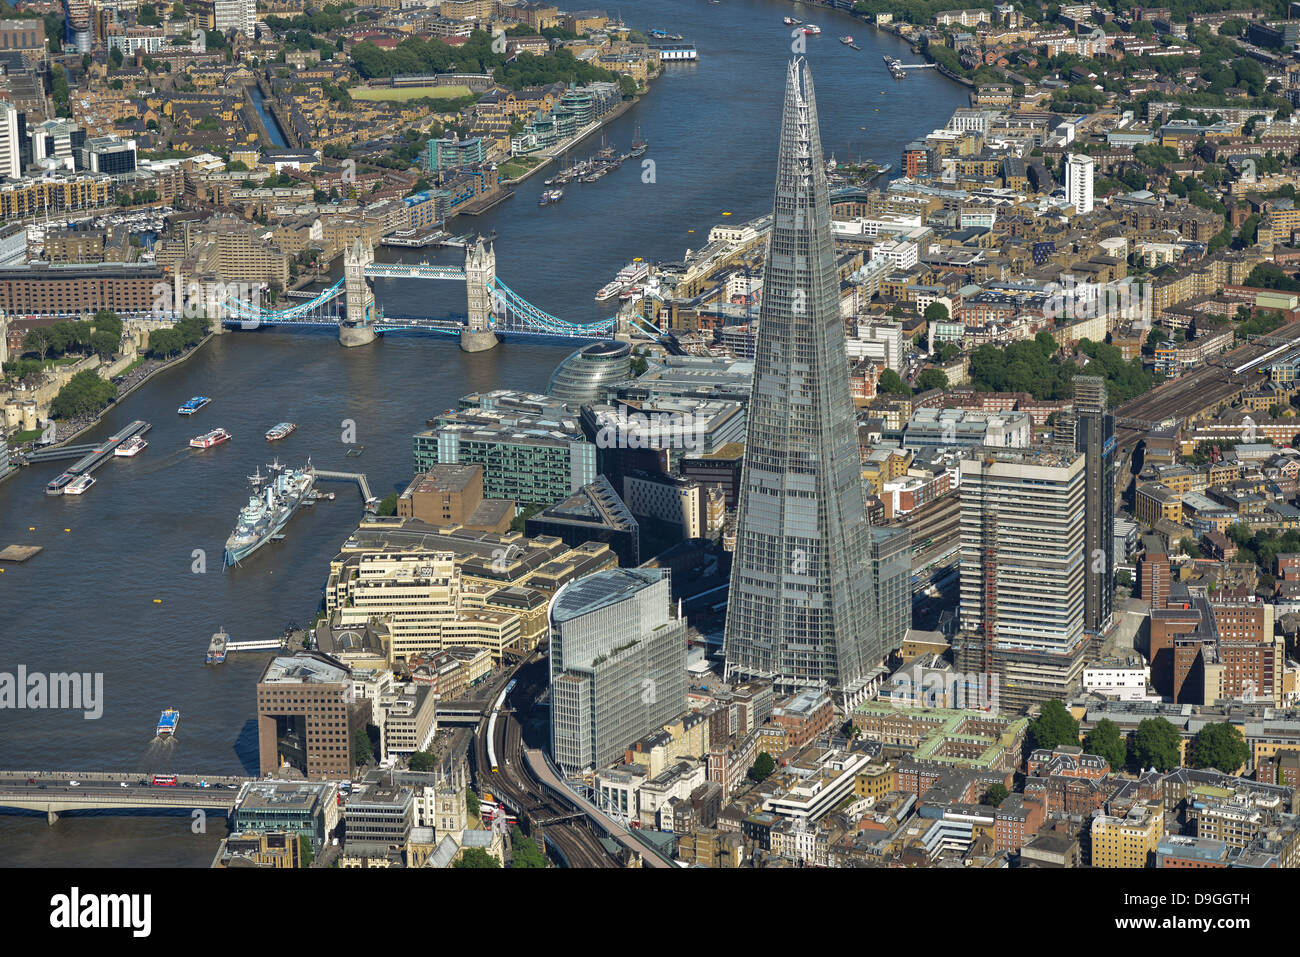 Luftaufnahme des Shards mit der Themse und Tower Bridge. Stockfoto